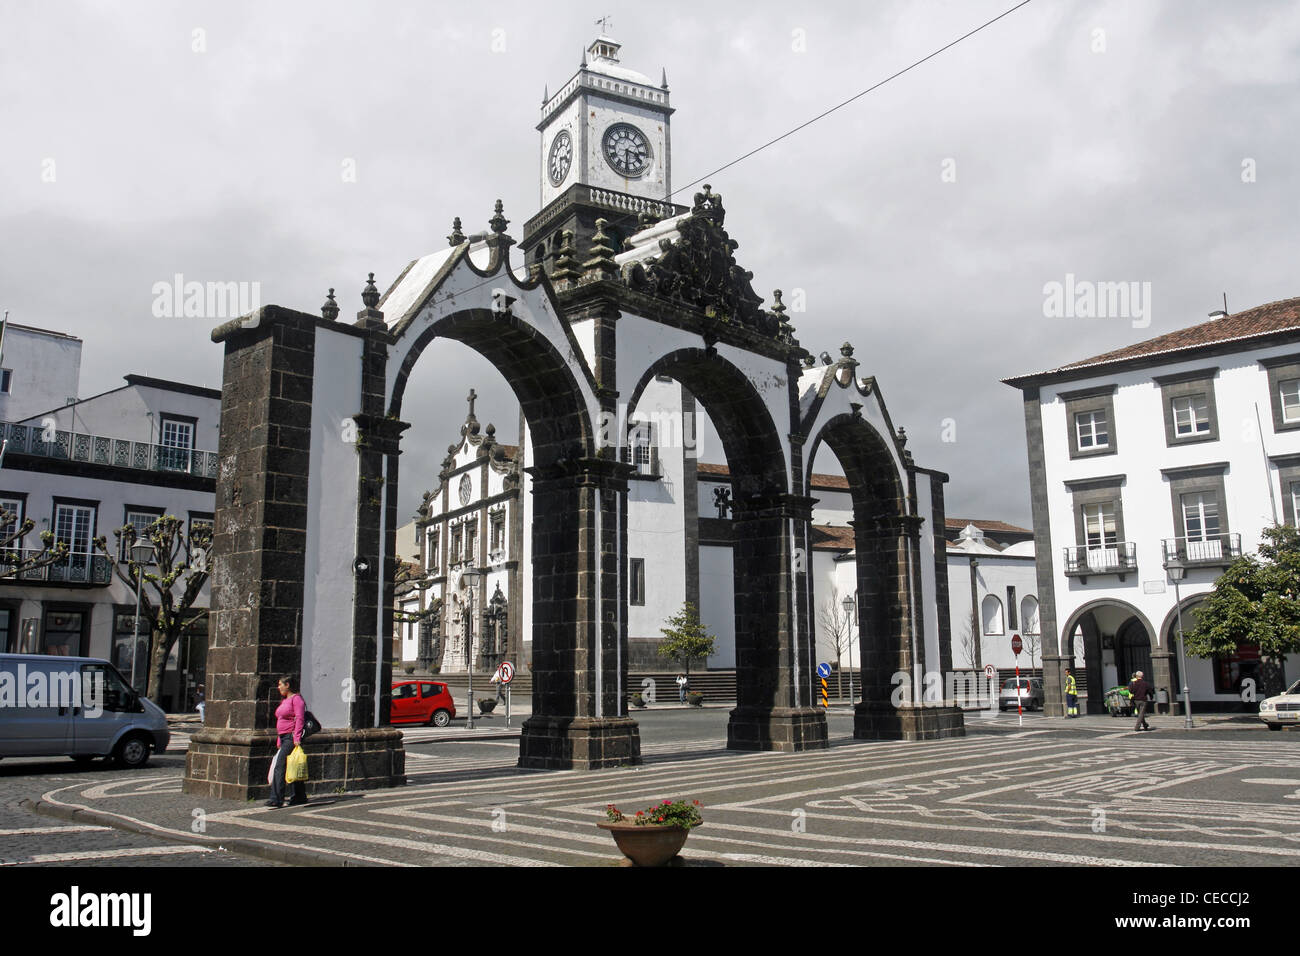 Azores San Miguel Island Portugal Ponta Delgada Portas da Cidade town gates Stock Photo